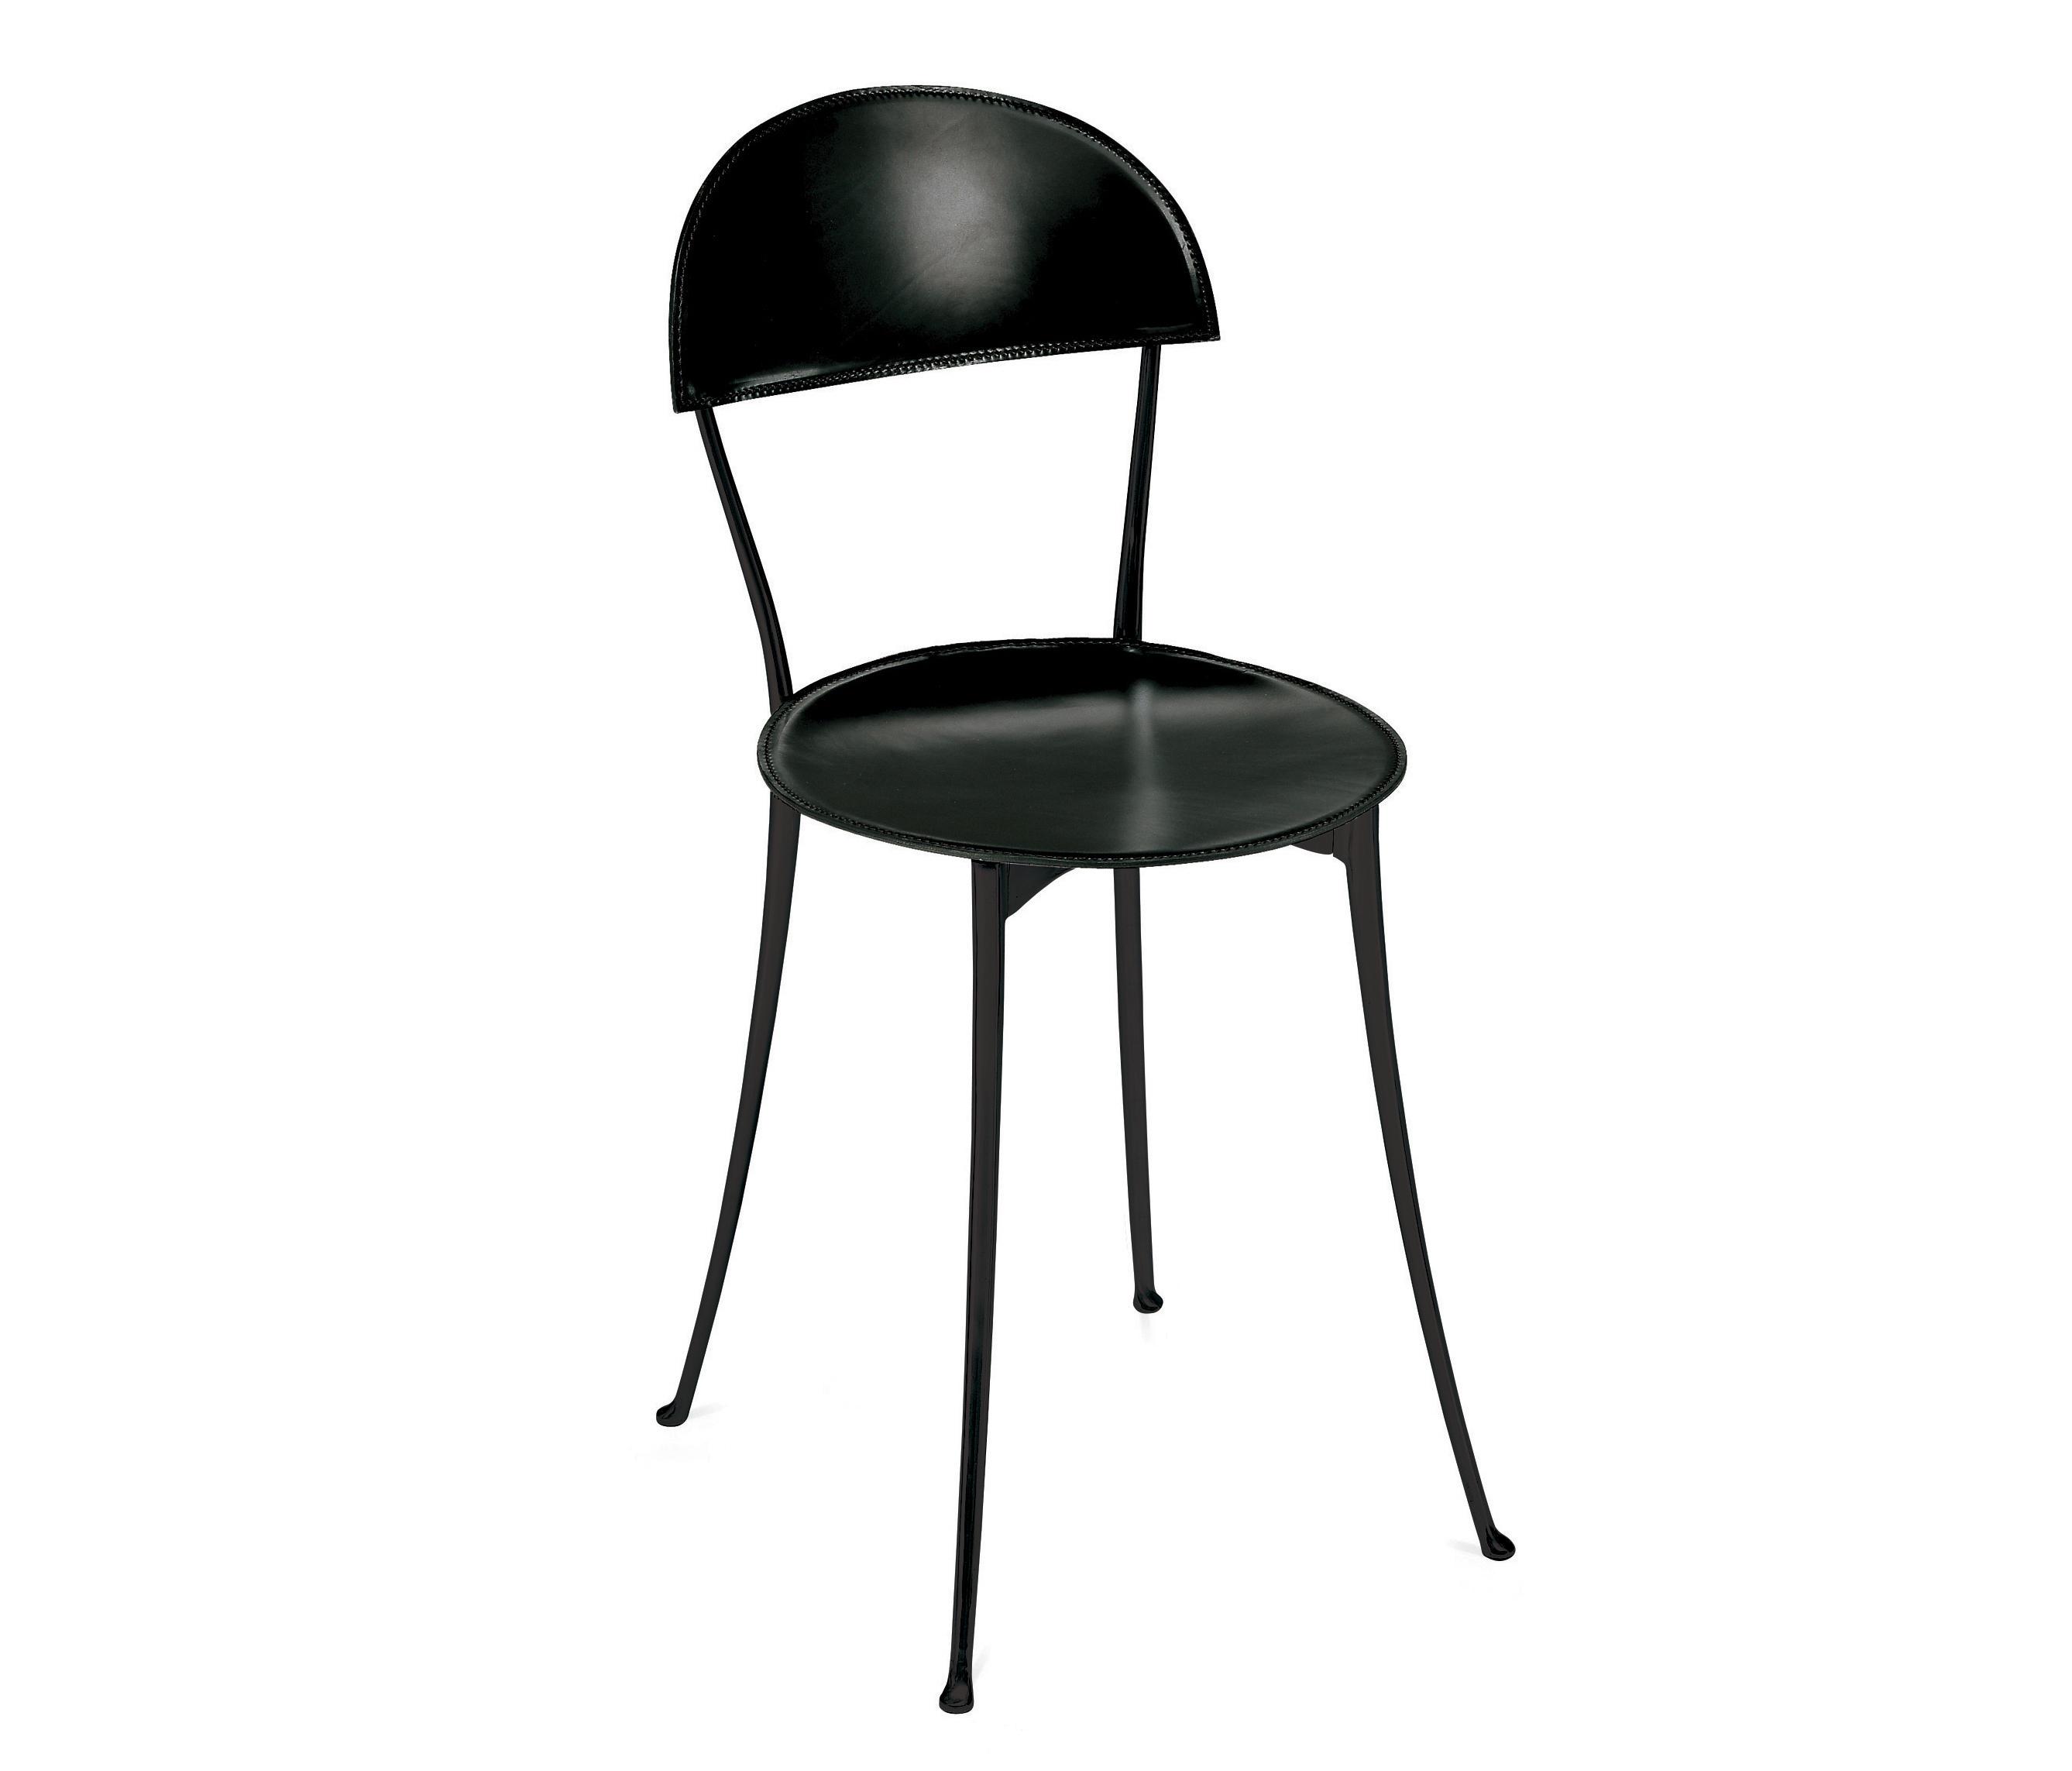 Стул стал черным. Итальянские стулья с металлическими ножками. Полированный стул. Черный шлифованный стул. Занотта.